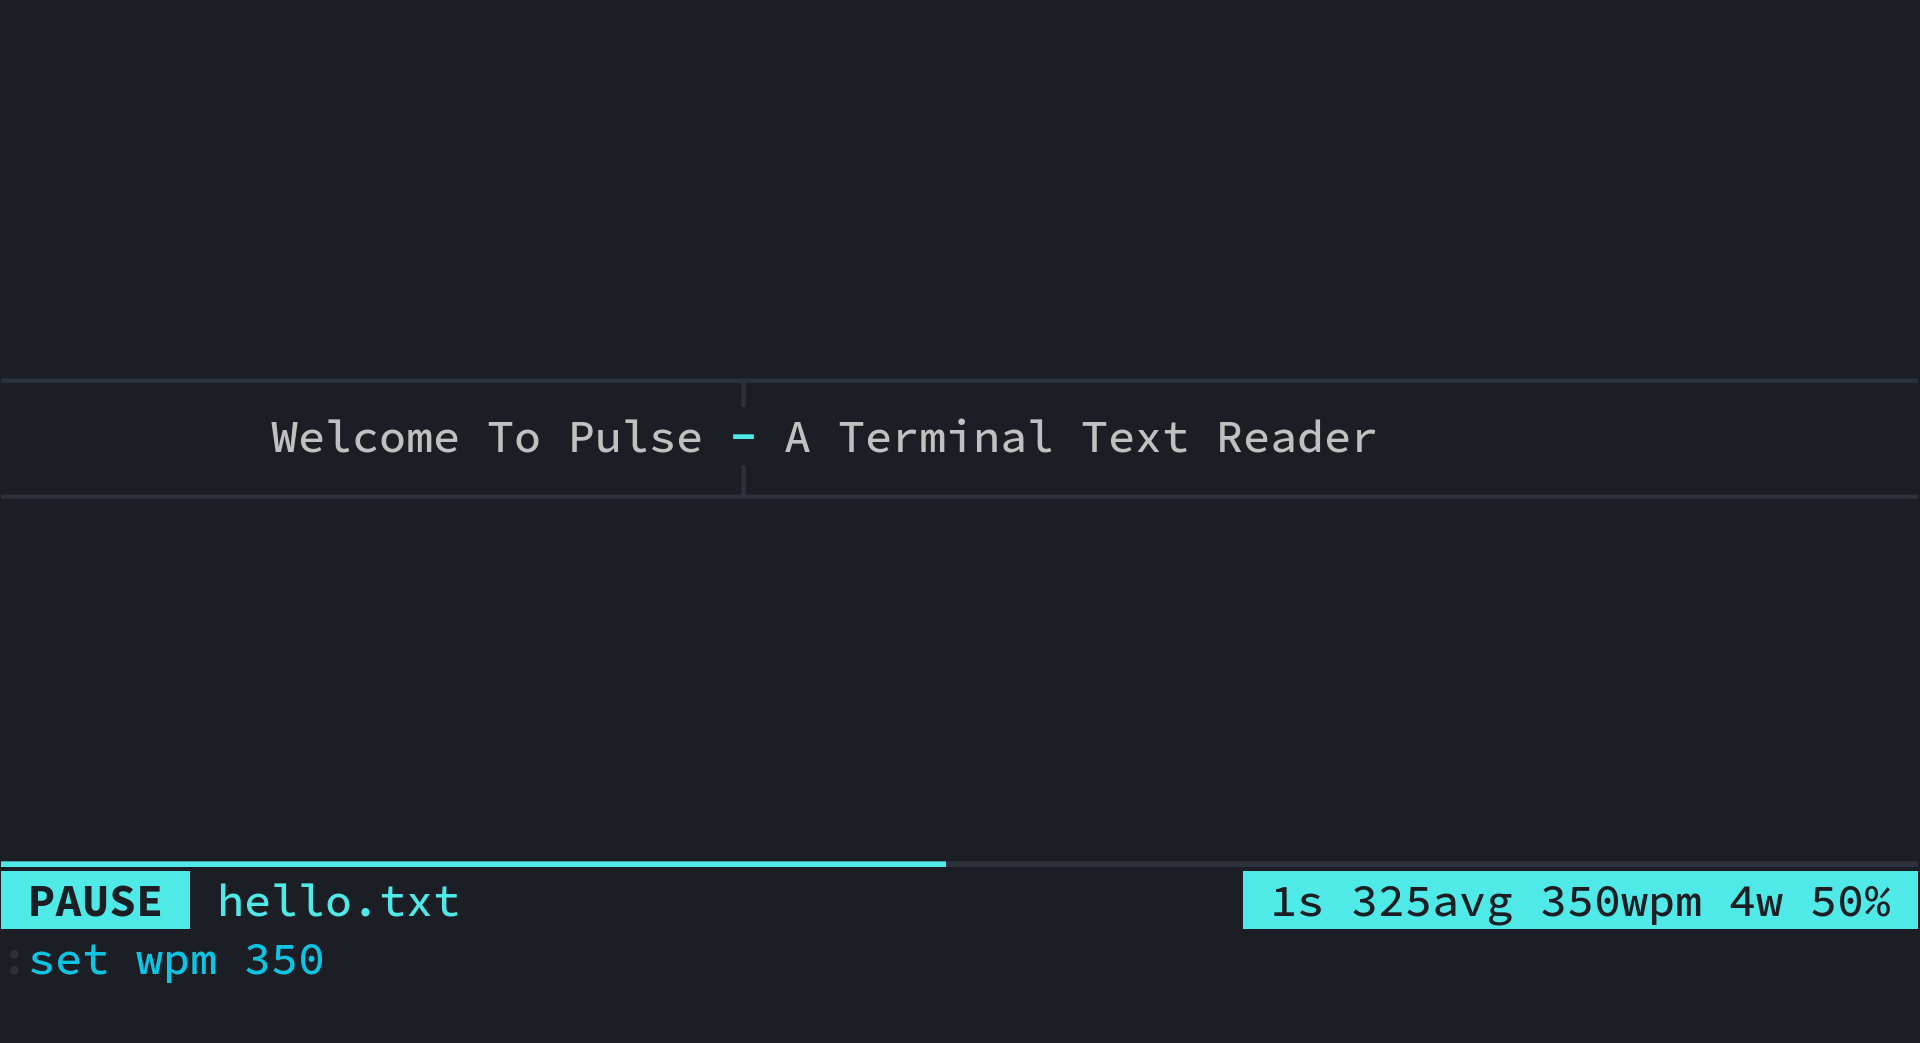 Terminal Text Reader Demo